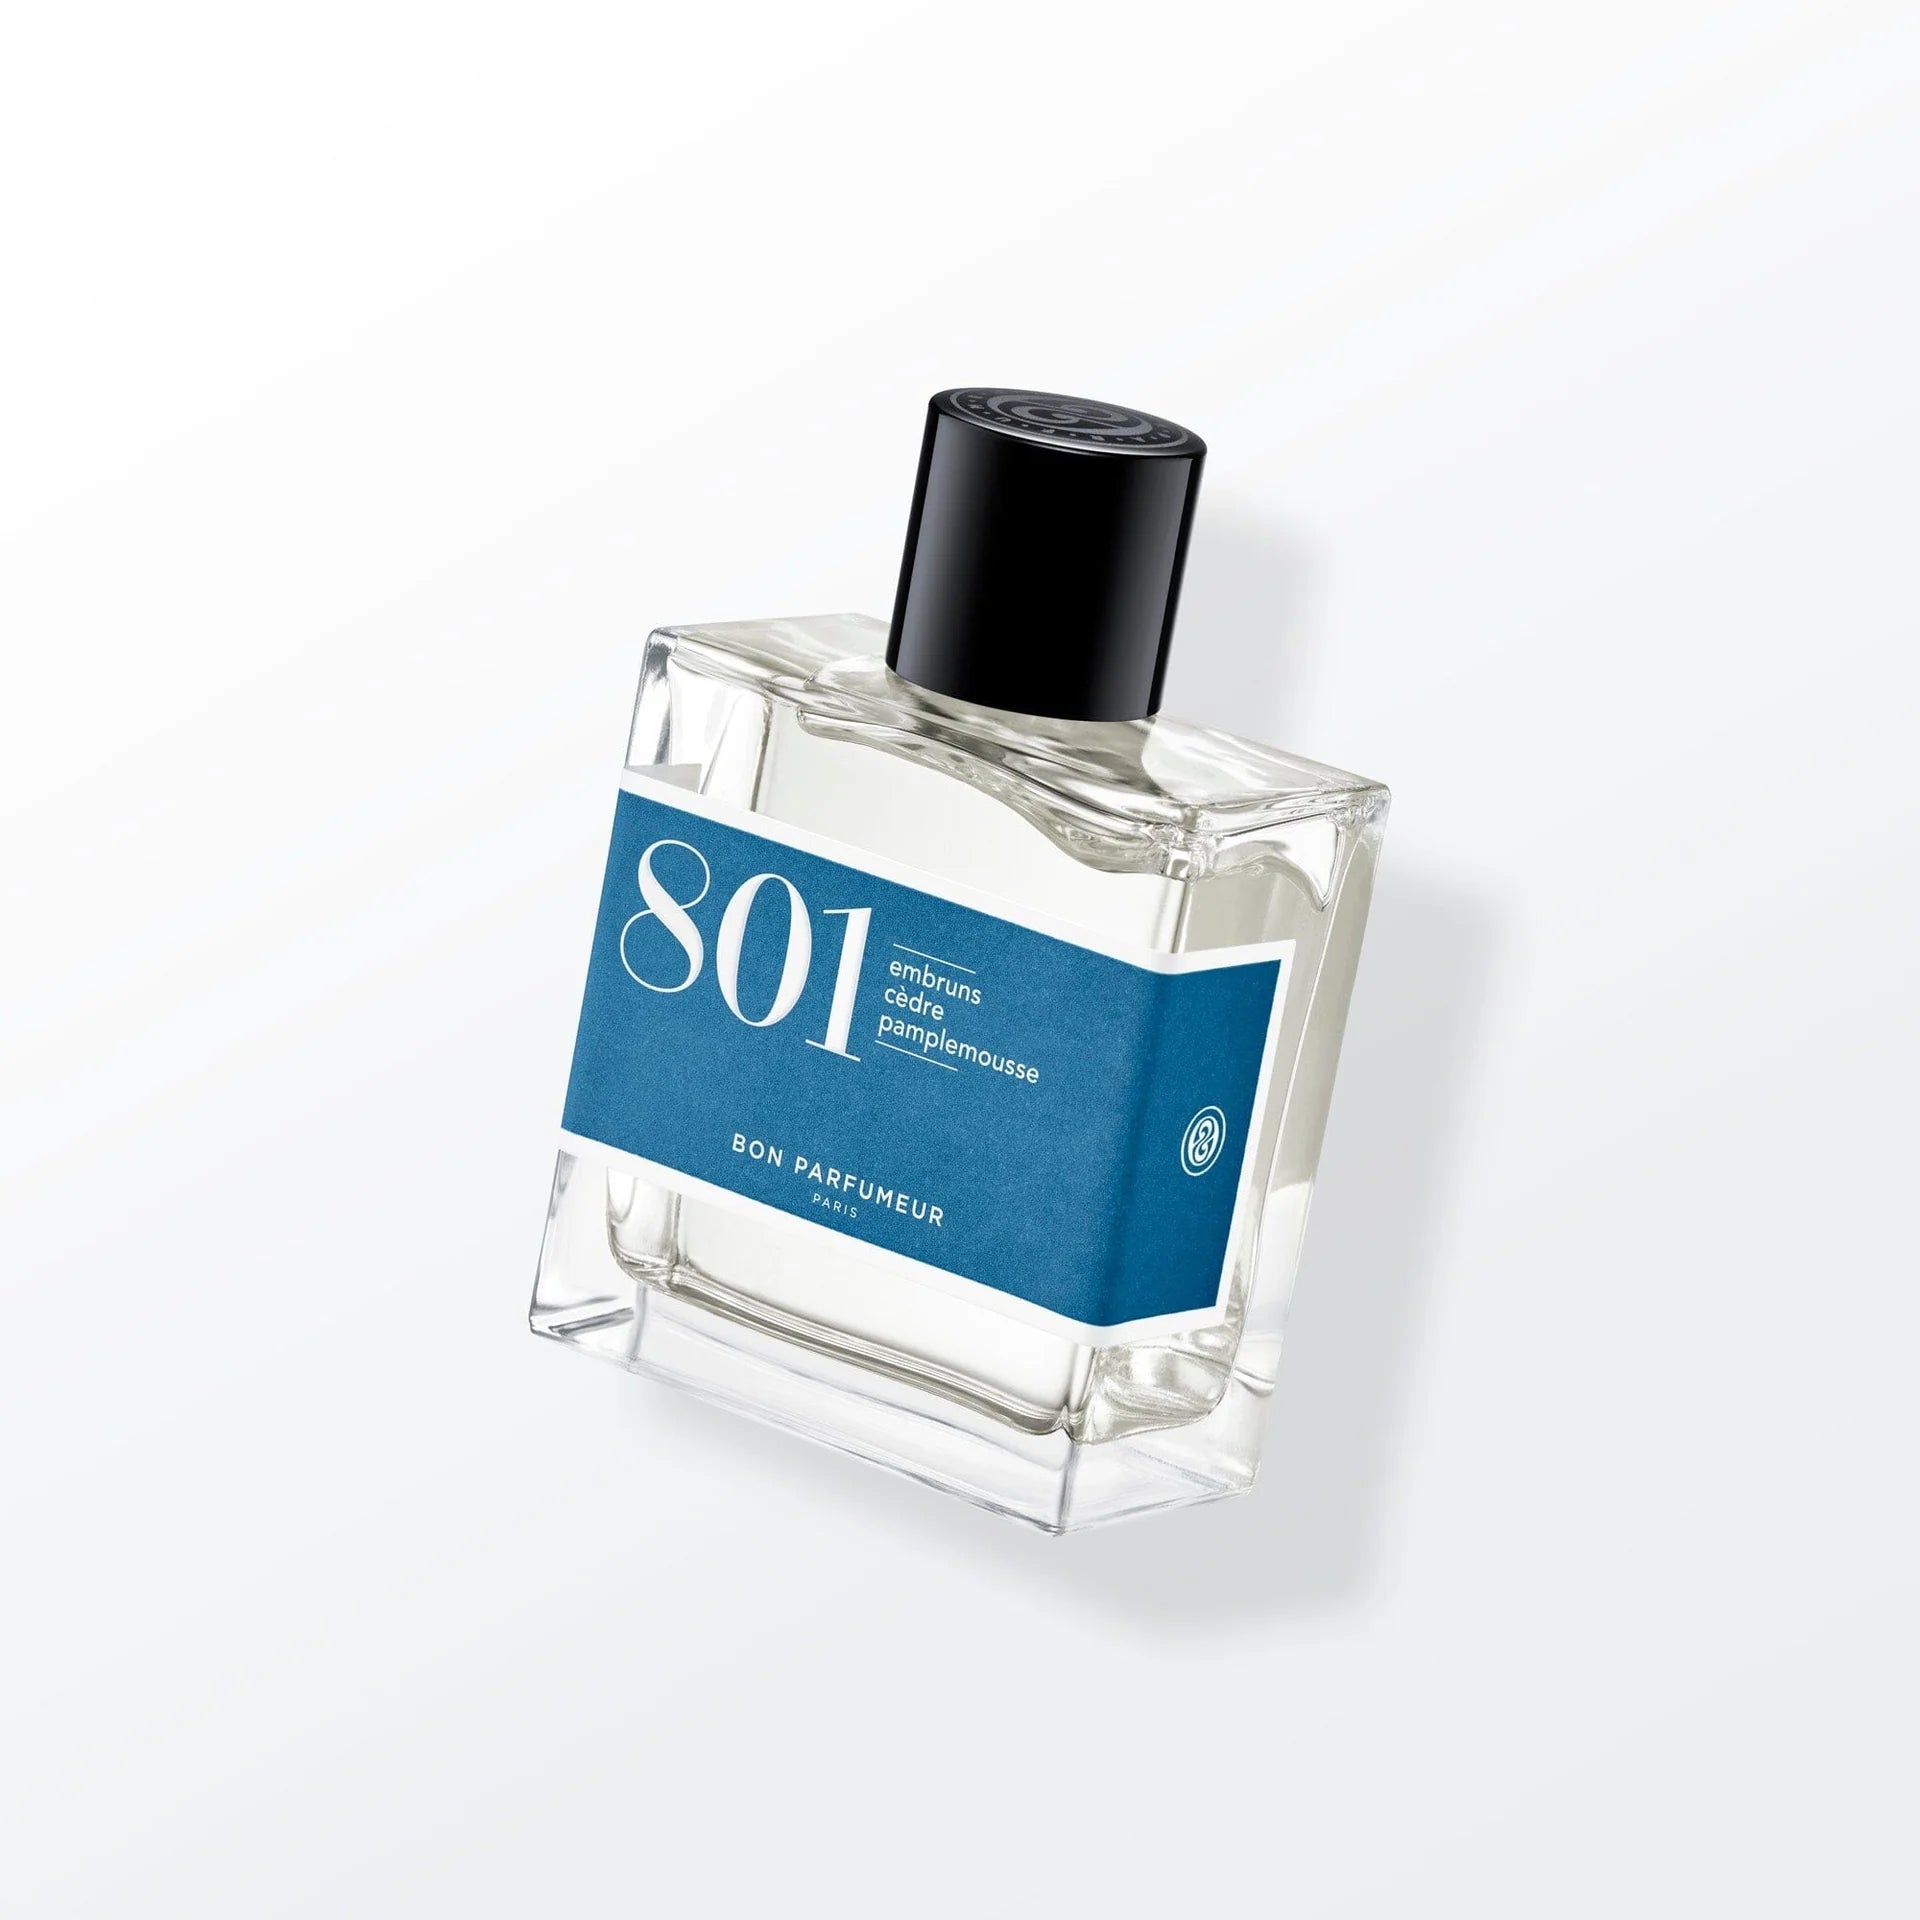 BON PARFUMEUR - Eau de Parfum &quot;801&quot; 30ml